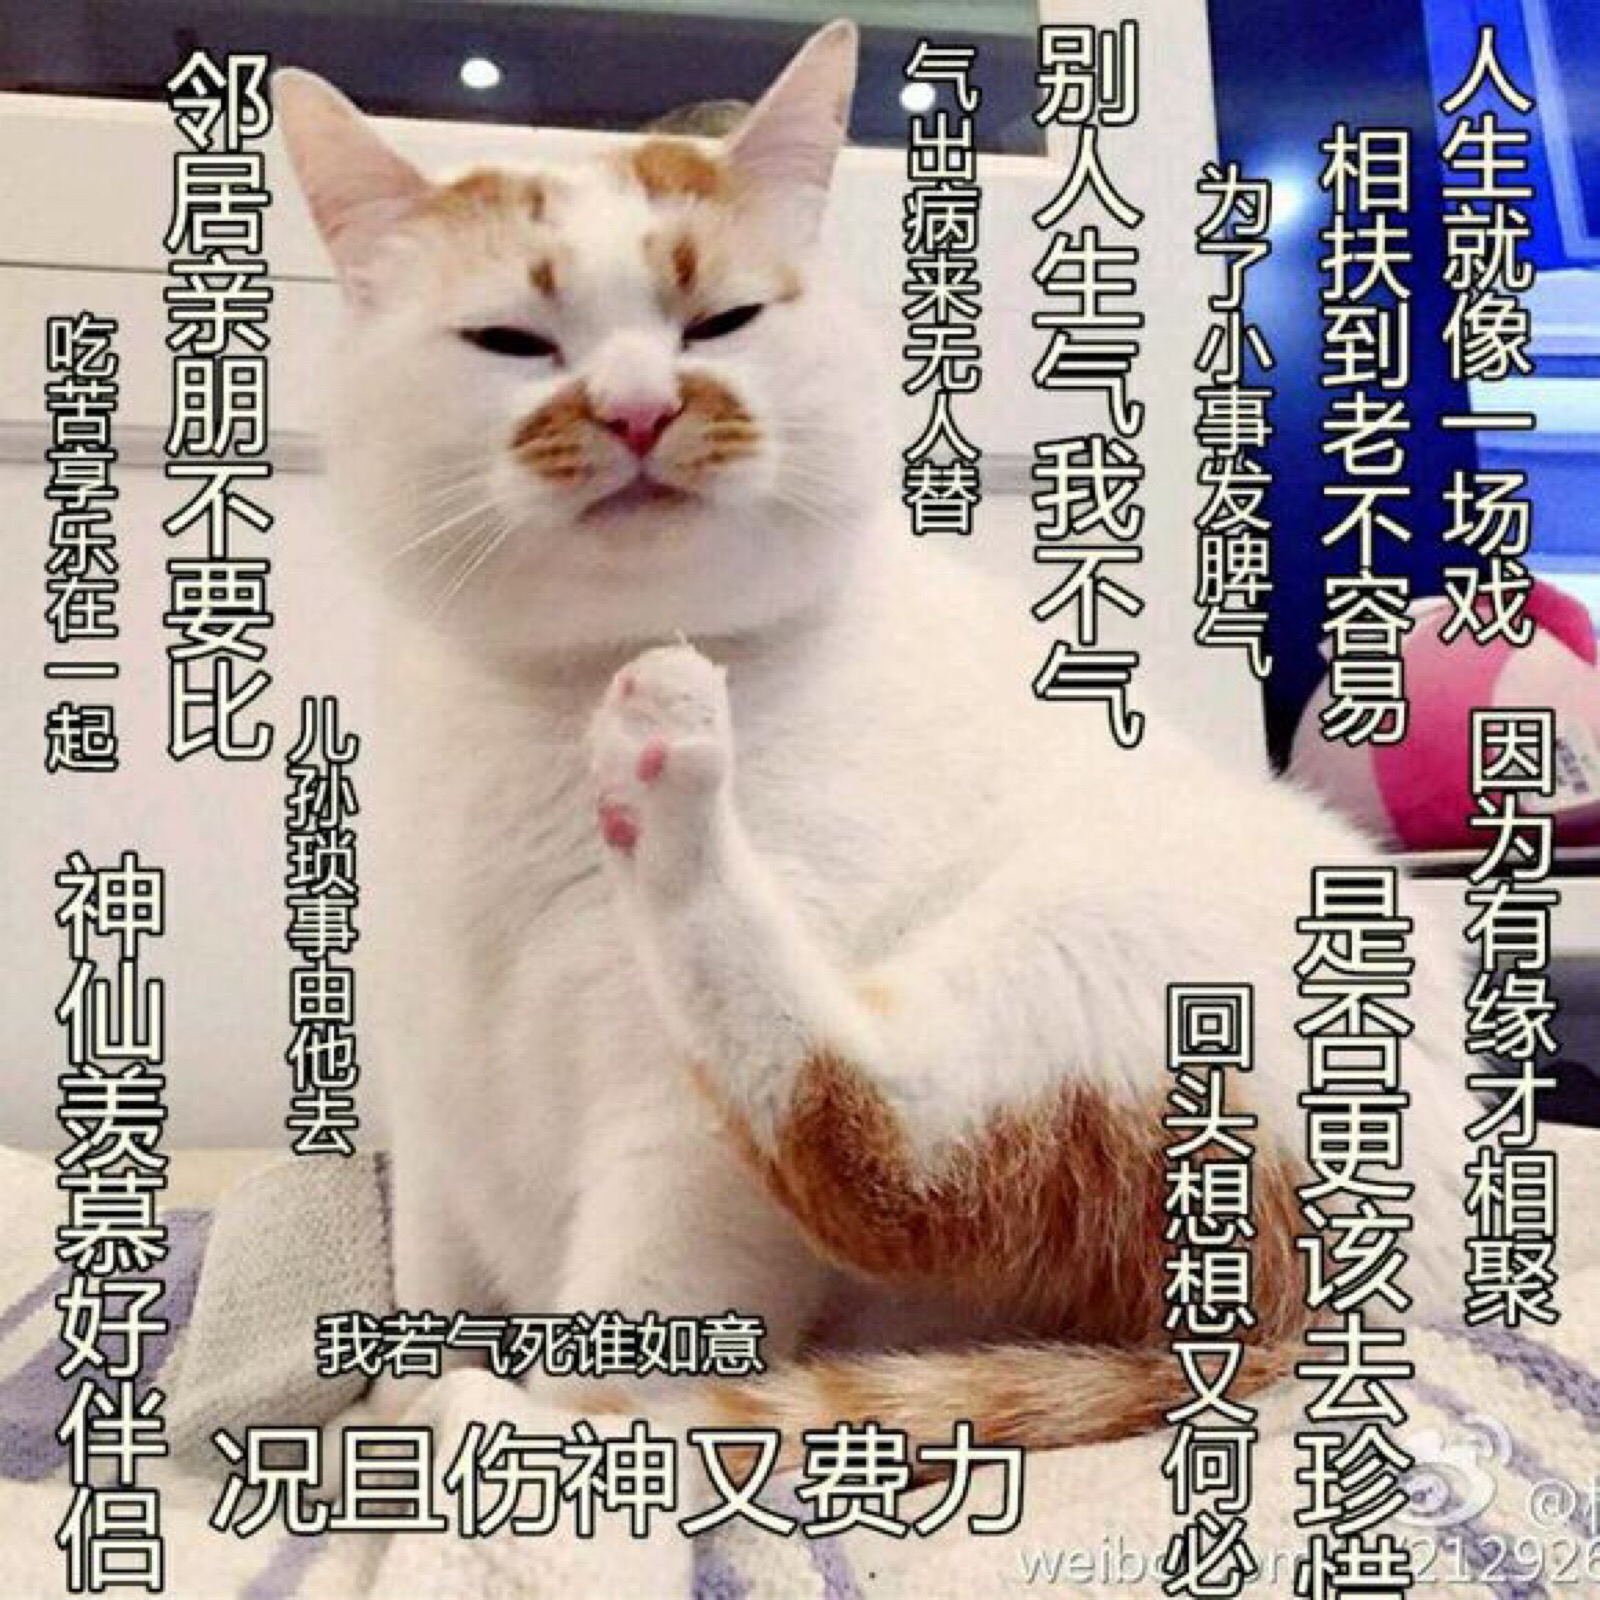 猫咪表情包文案图片